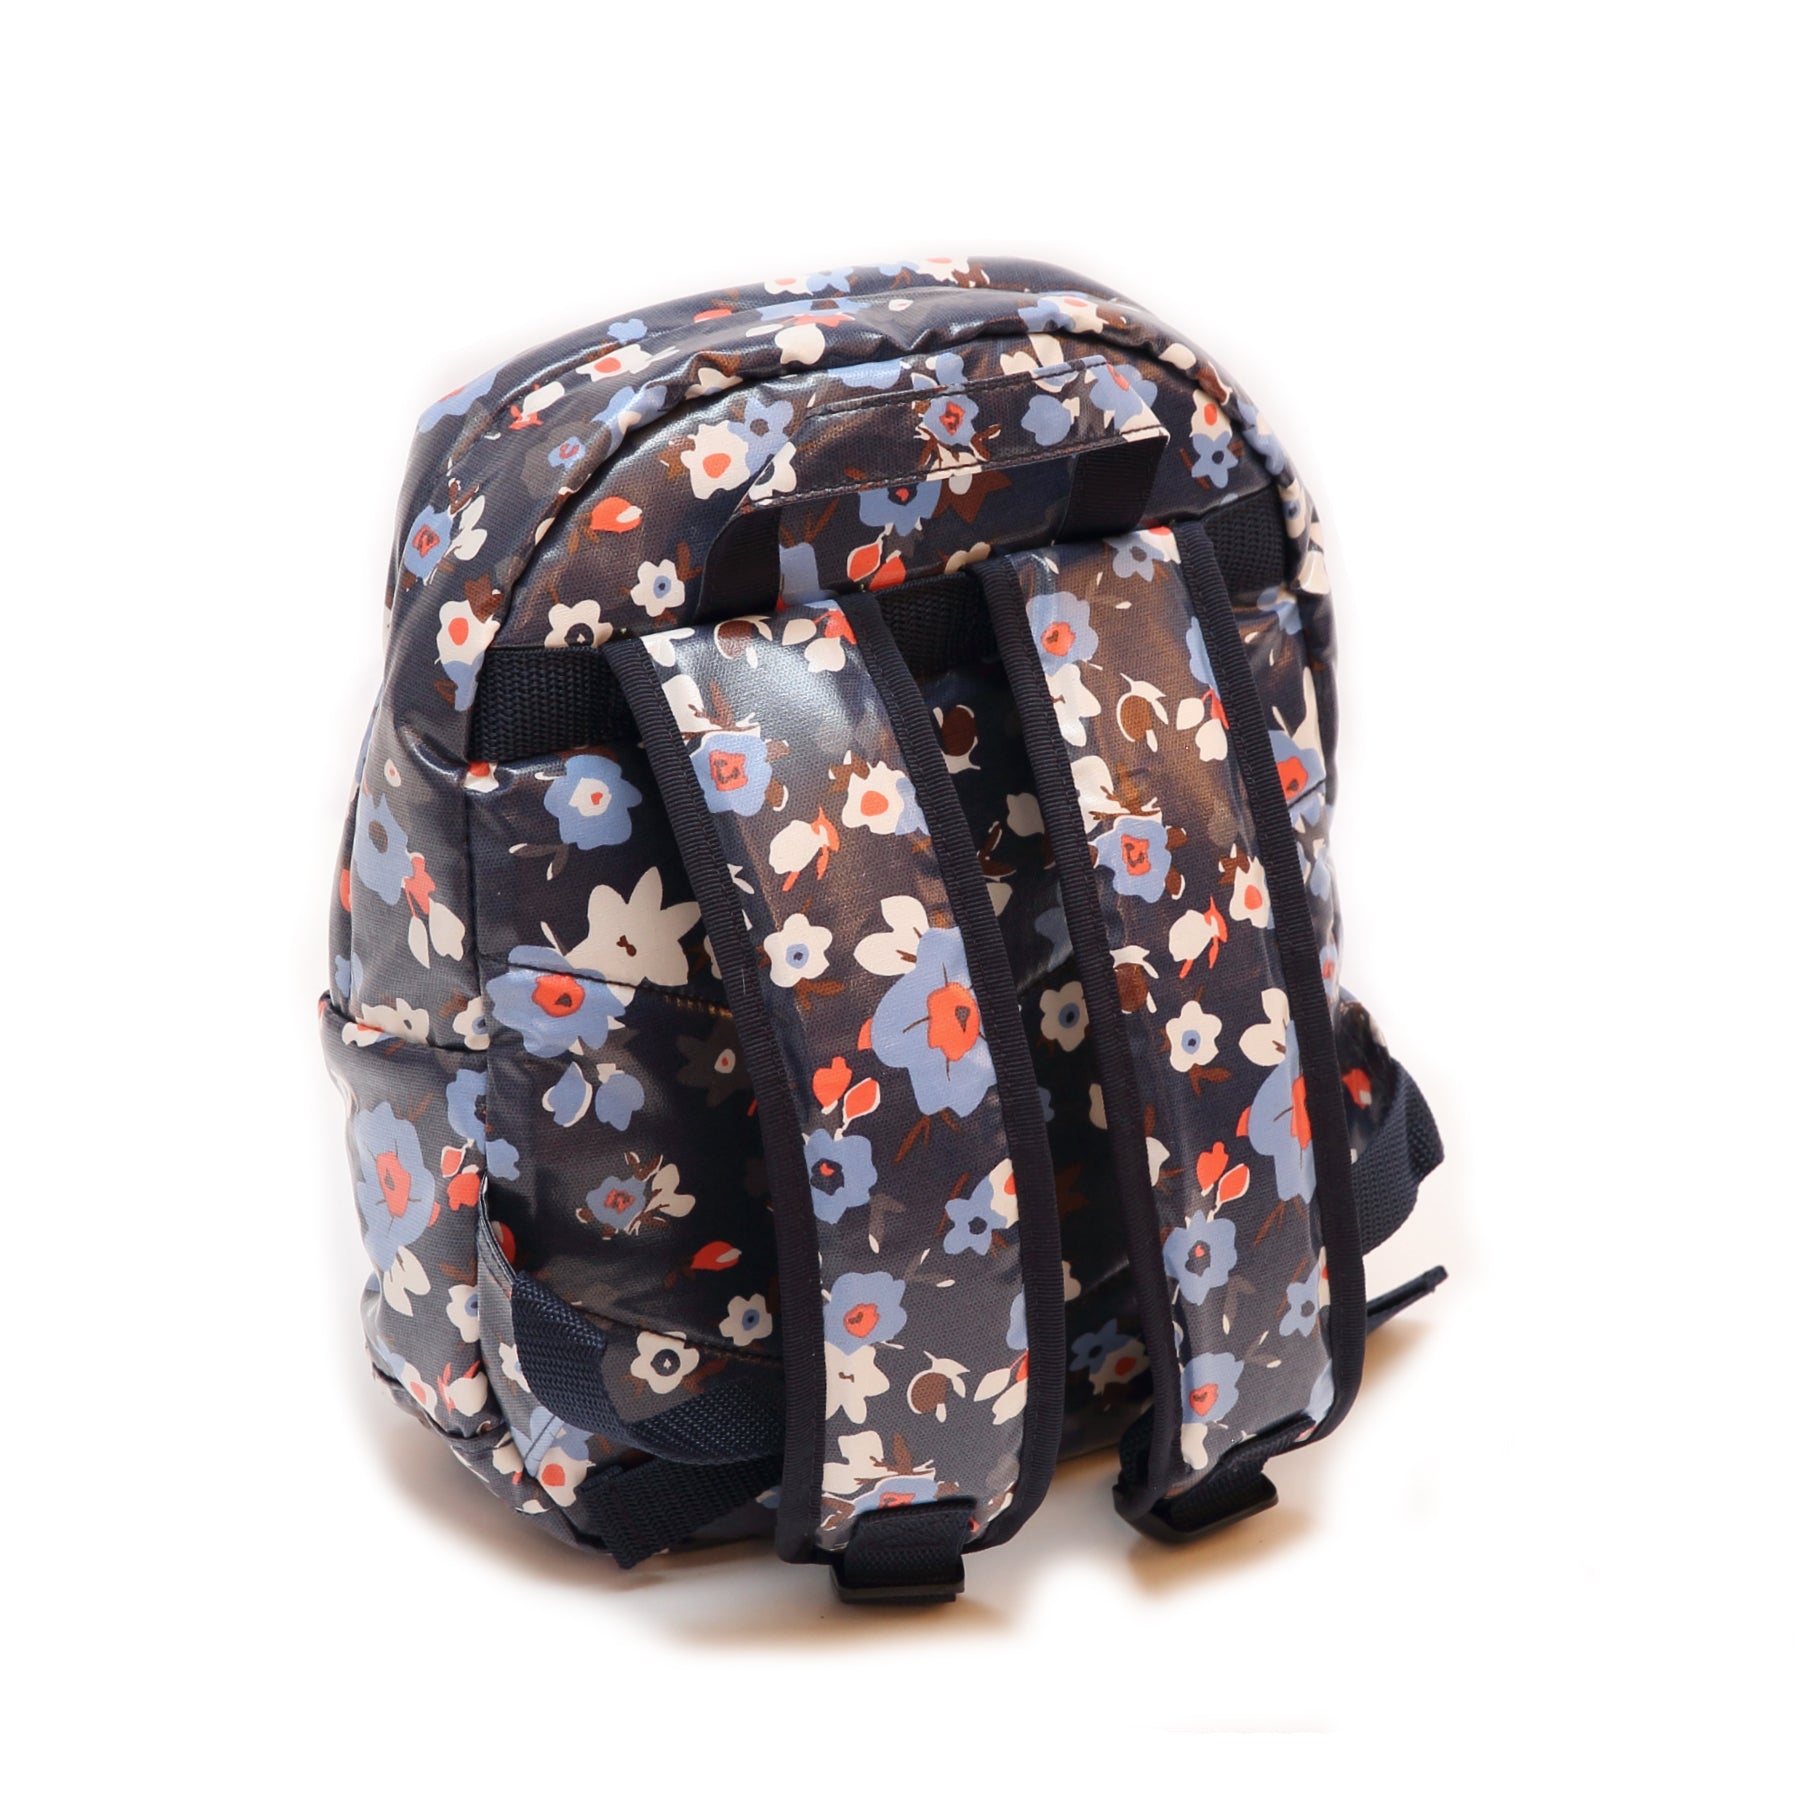 Pluie Pluie Girls Navy Flower Backpack